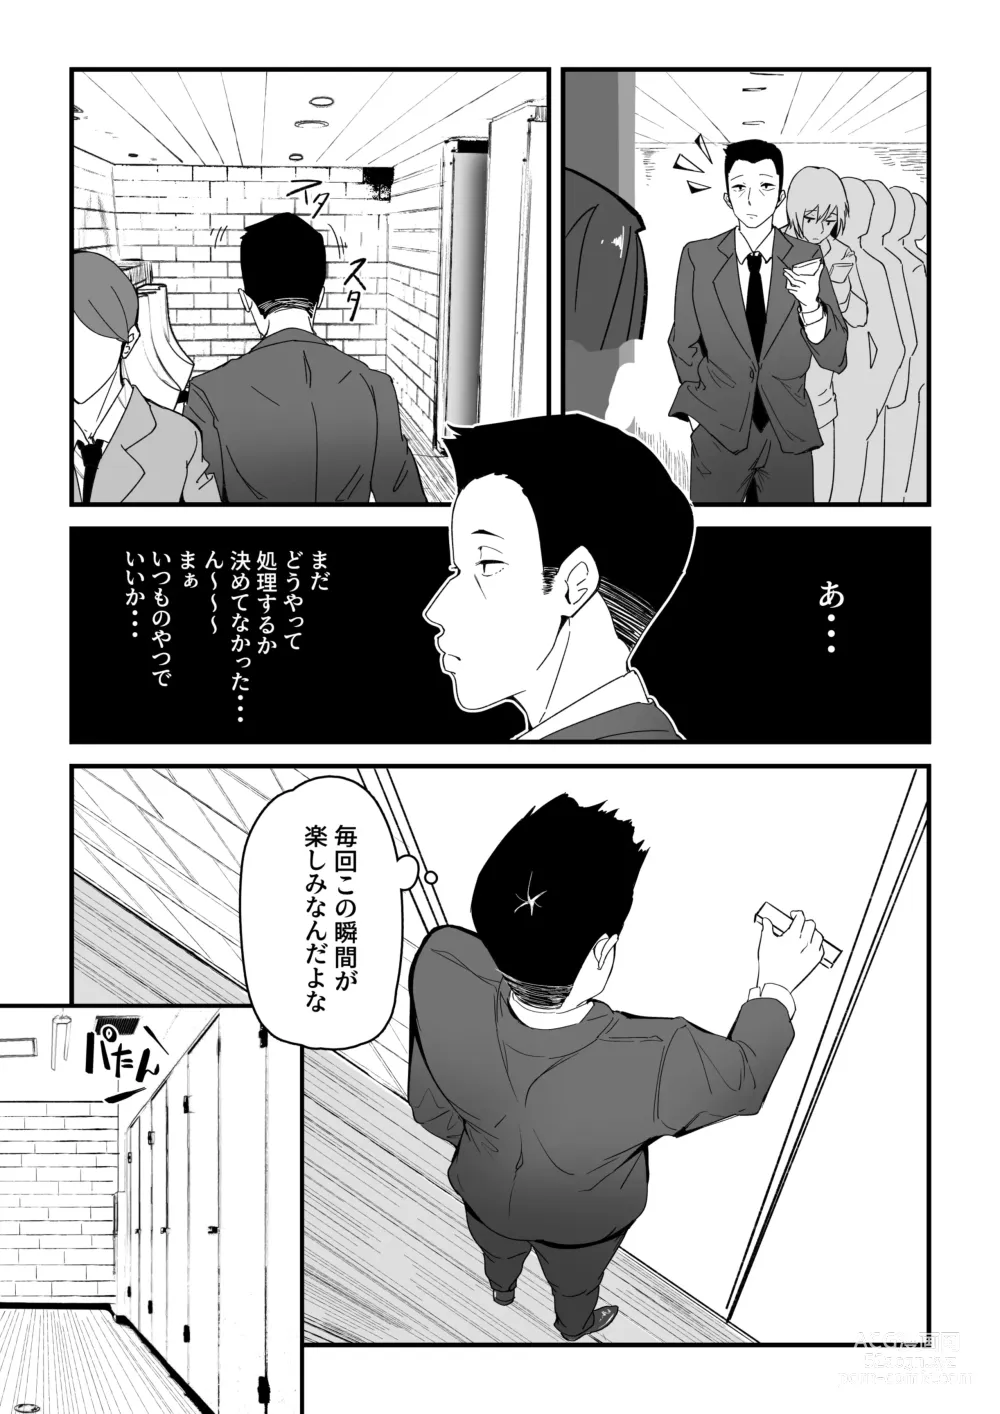 Page 3 of doujinshi Danseiyou Toile wa Itsumo Kondeiru.